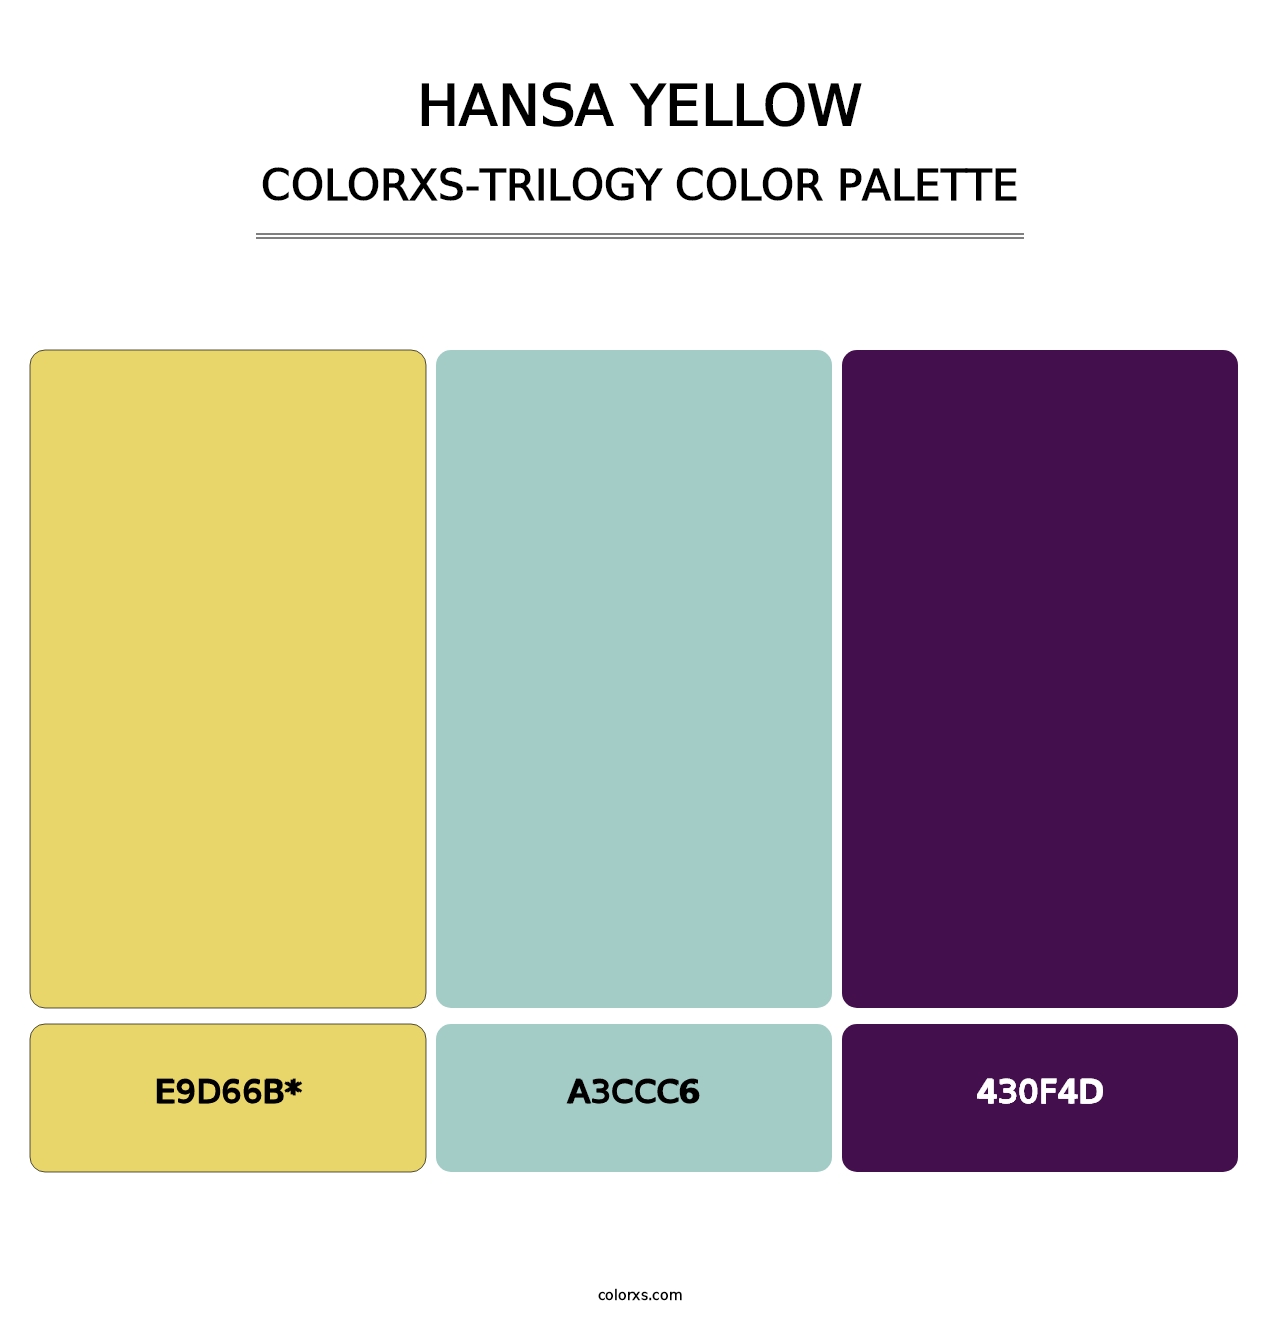 Hansa Yellow - Colorxs Trilogy Palette